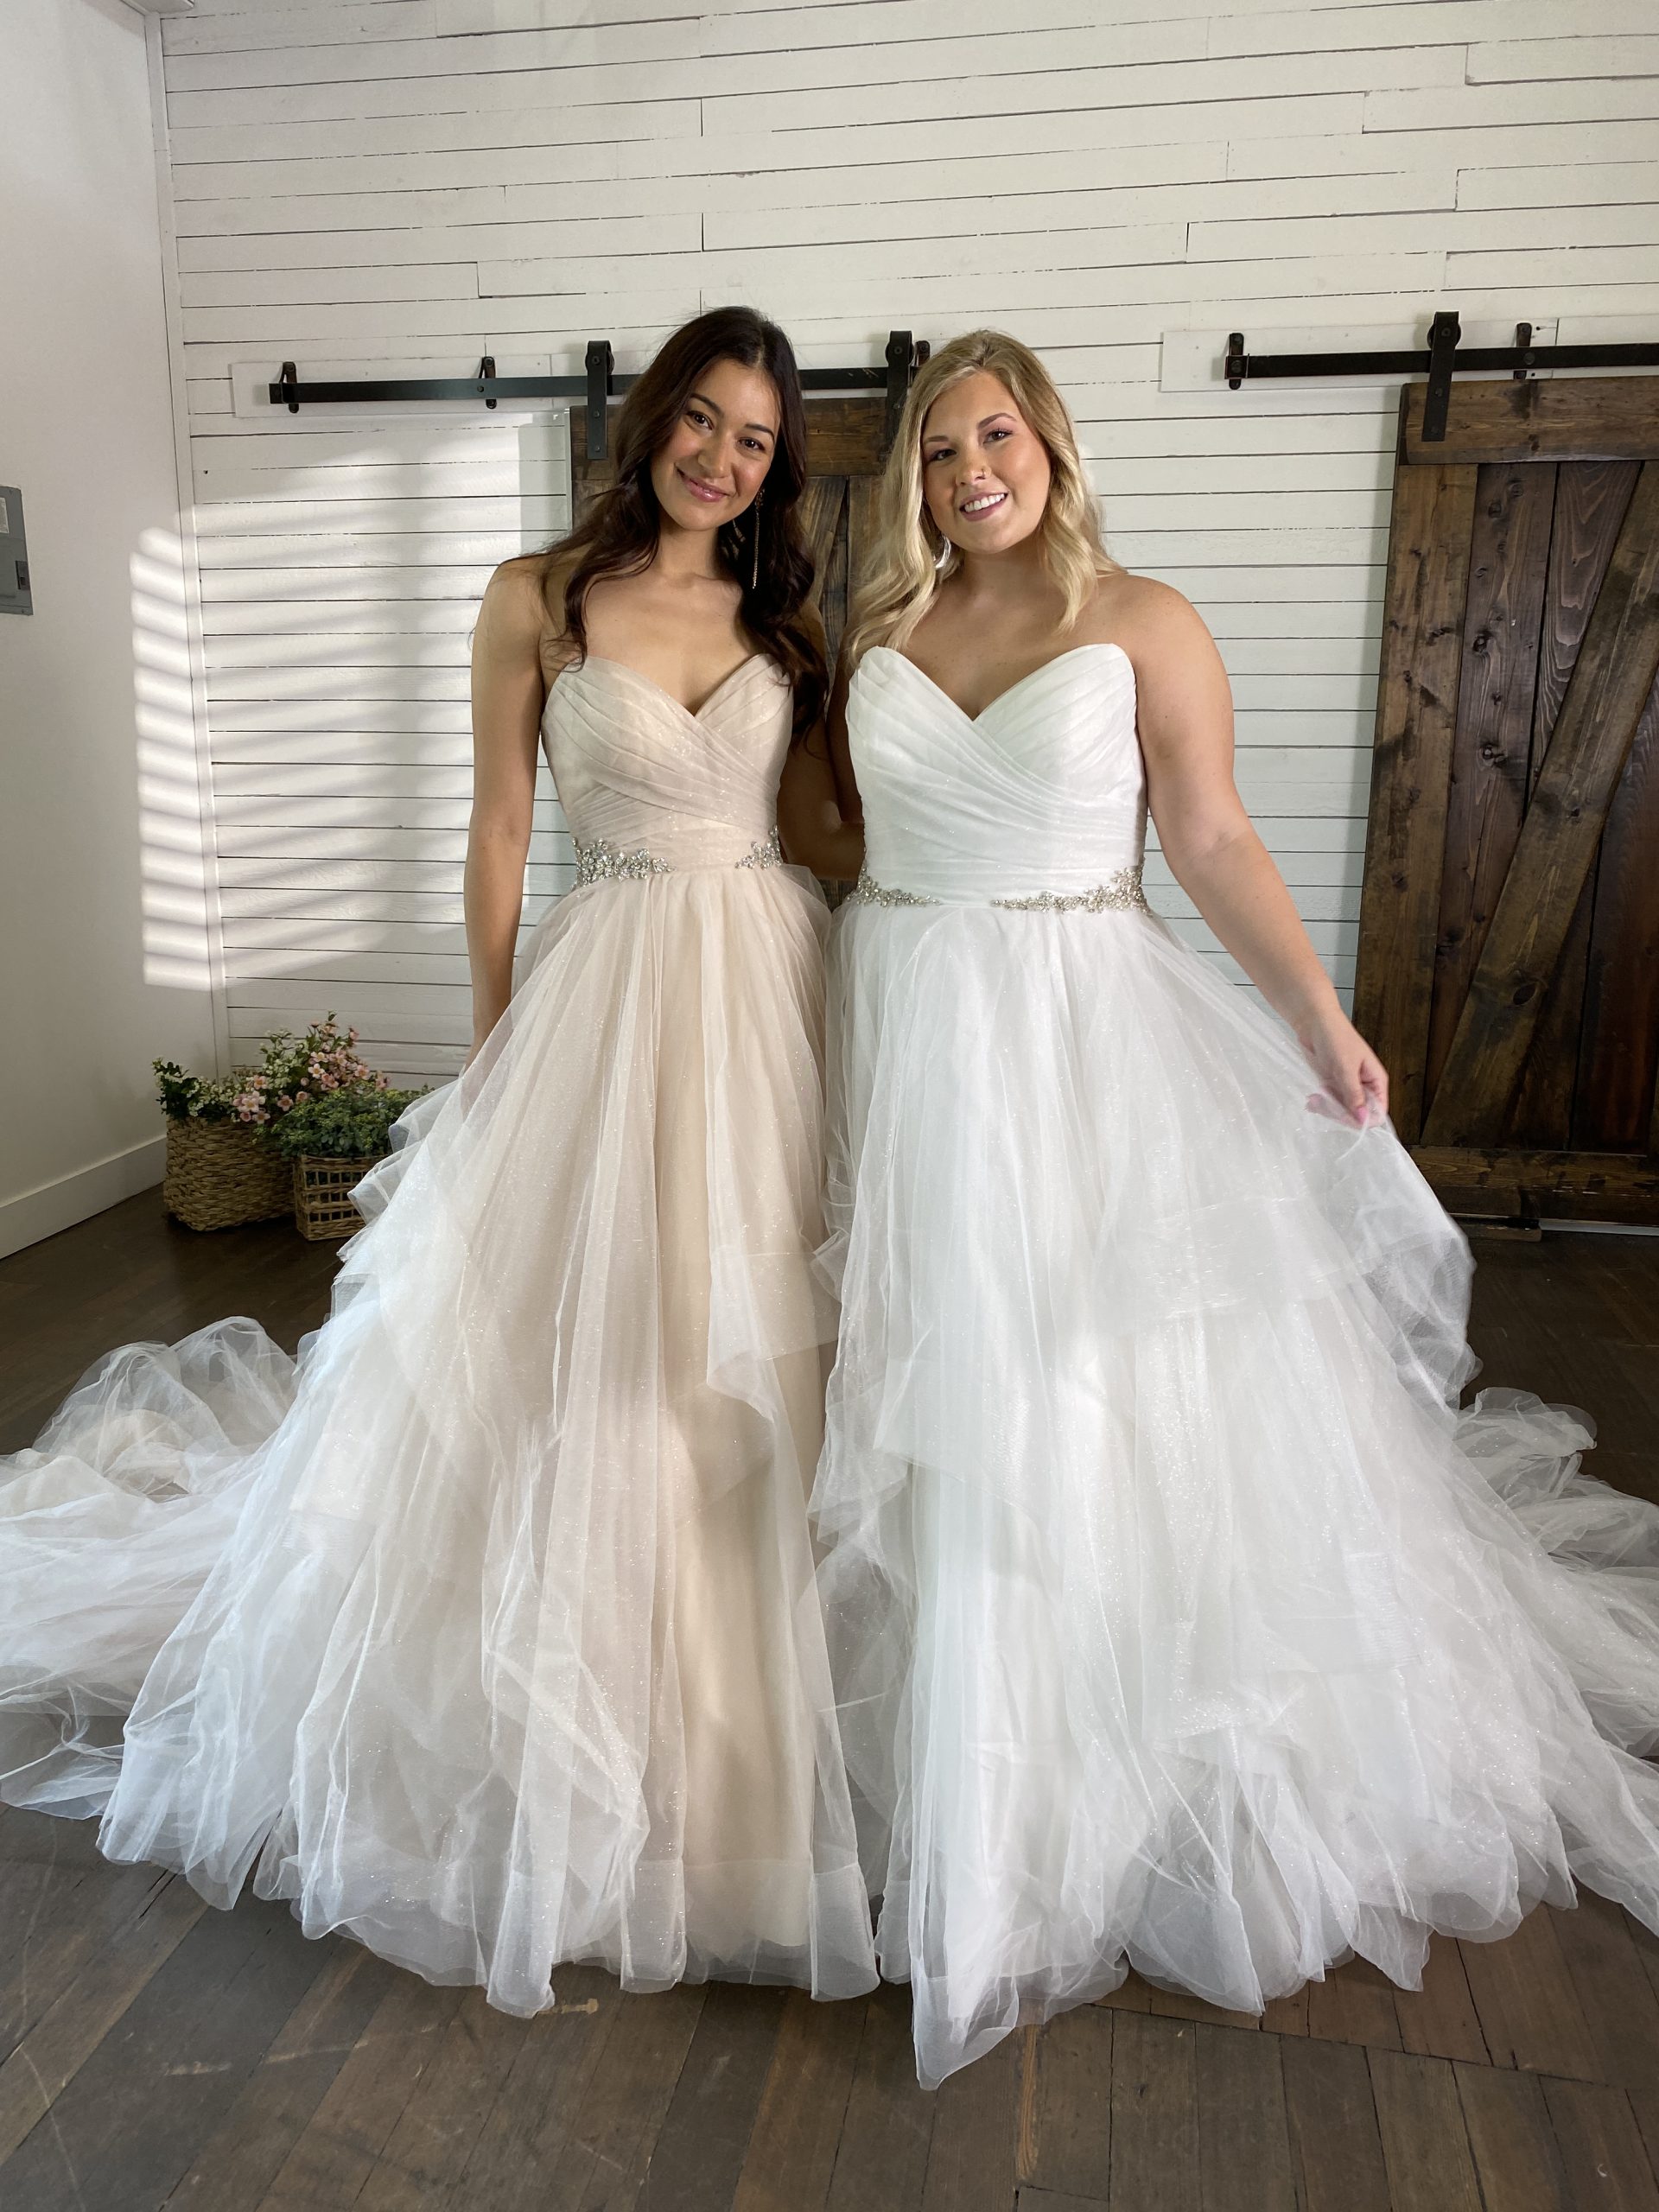 Brides In Ballgown Wedding Dress Called Yasmin By Maggie Sottero